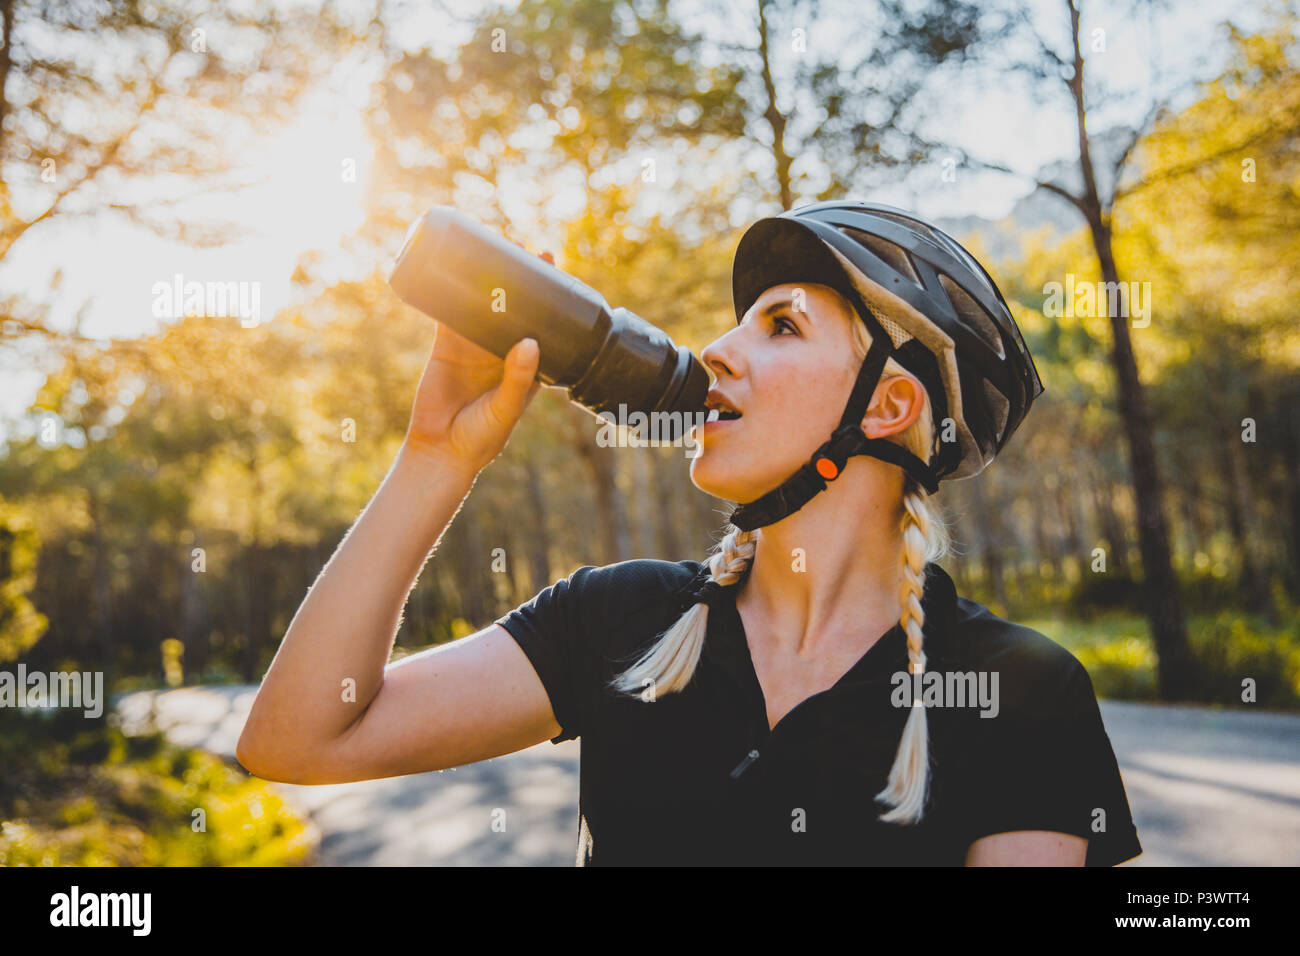 Fahrradfahrerin auf der Strasse, Cycling Girl Mallorca auf einem Rennrad Stock Photo